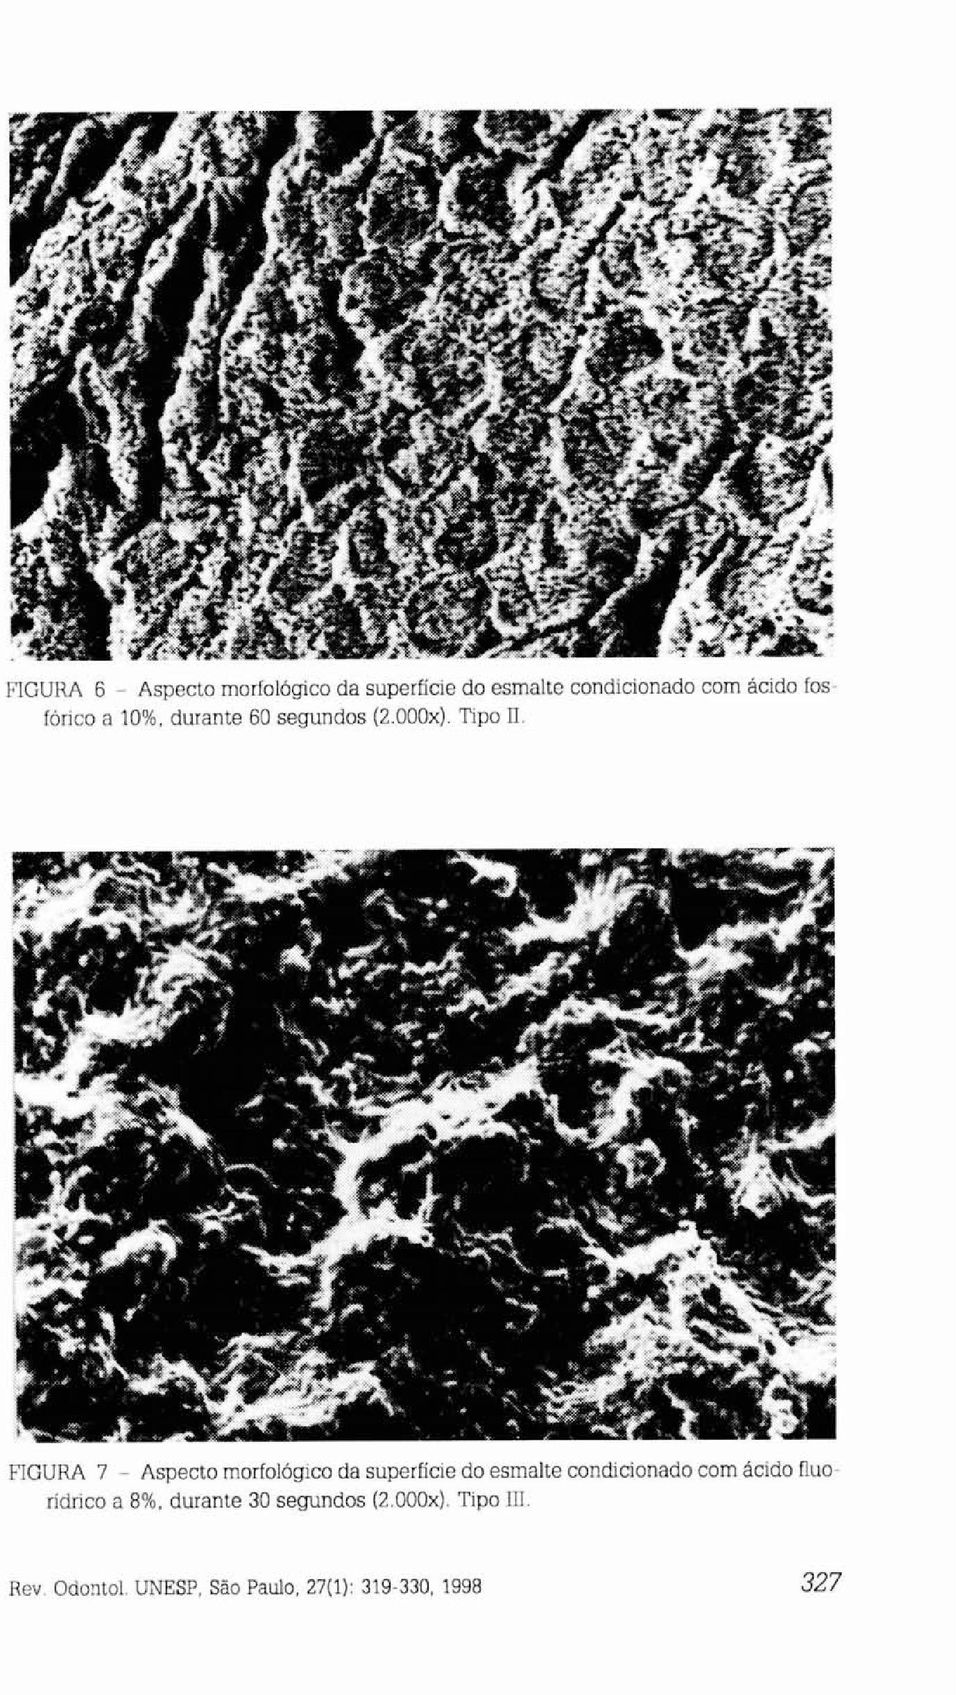 FIGURA 7 - Aspecto morfológico da superfície do esmalte condicionado com ácido